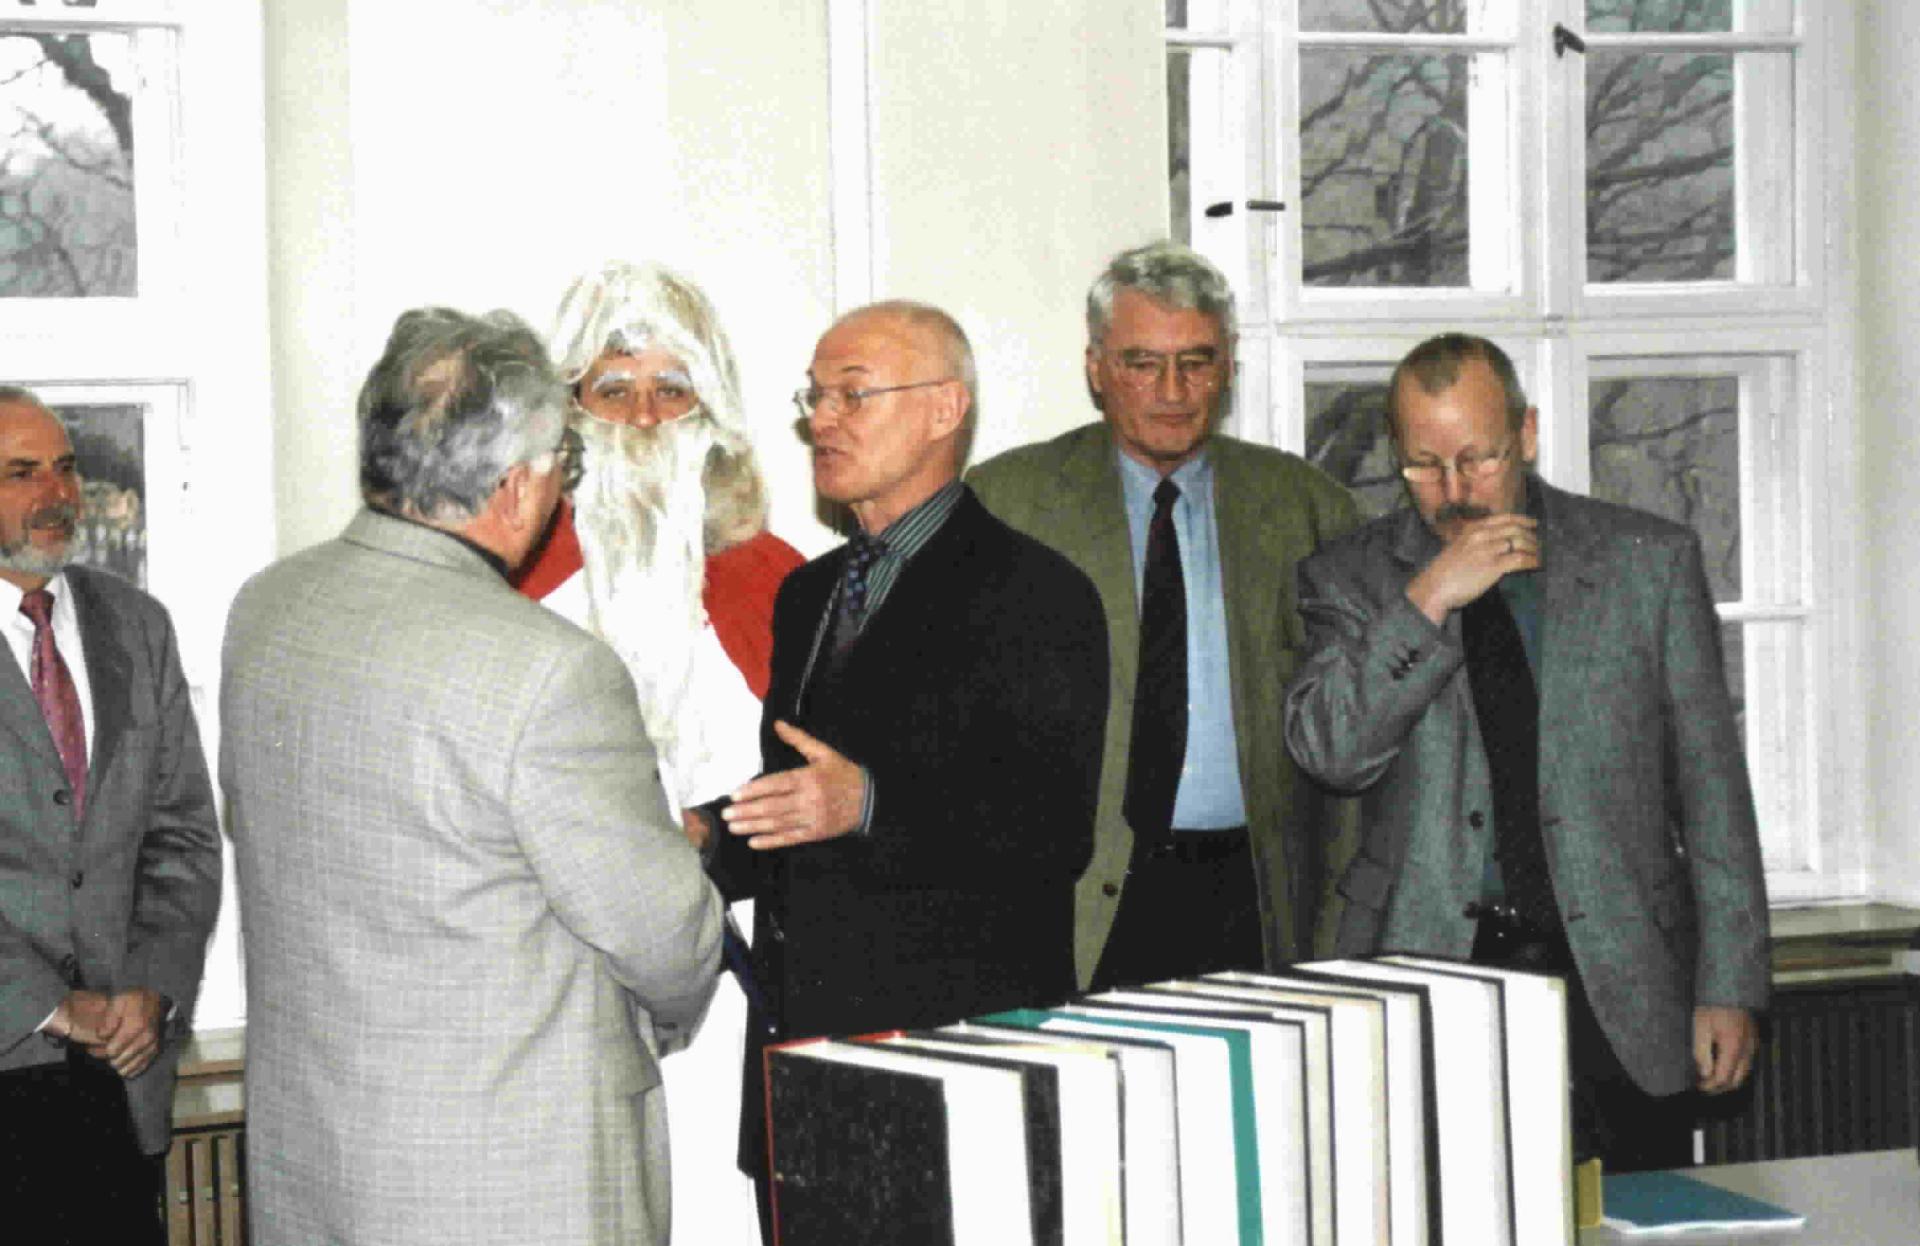 Abgabe der gesammelten Unterschriften im Landtag, in der Mitte Landtagspräsident Knoblich, rechts Christoph Krüger 2003